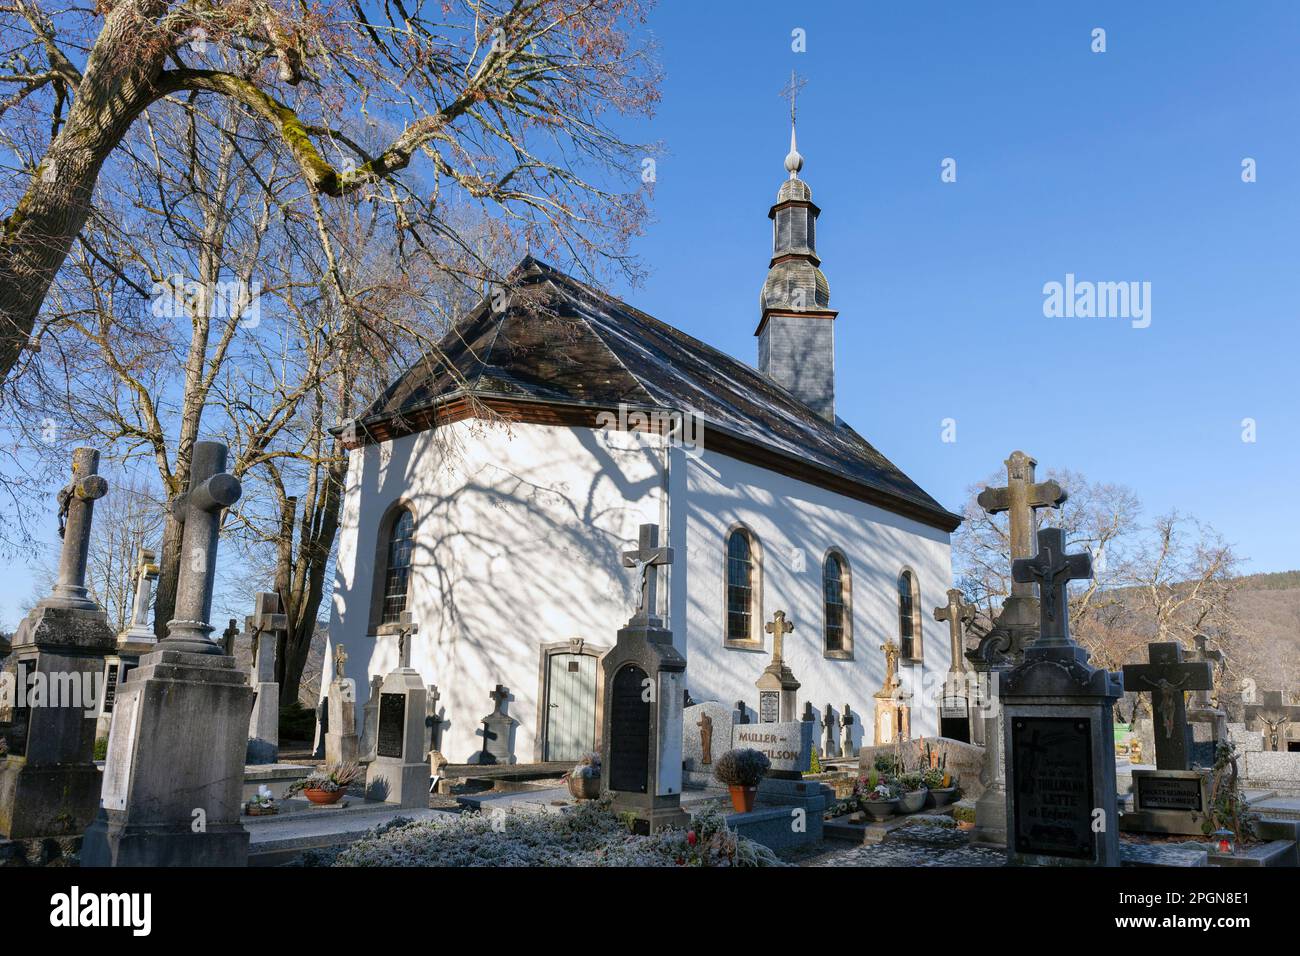 Europa, Luxemburg, Diekirch, Esch-sur-Sure, Kapelle Ste-Croix mit Bäumen und Gräbern im Winter Stockfoto